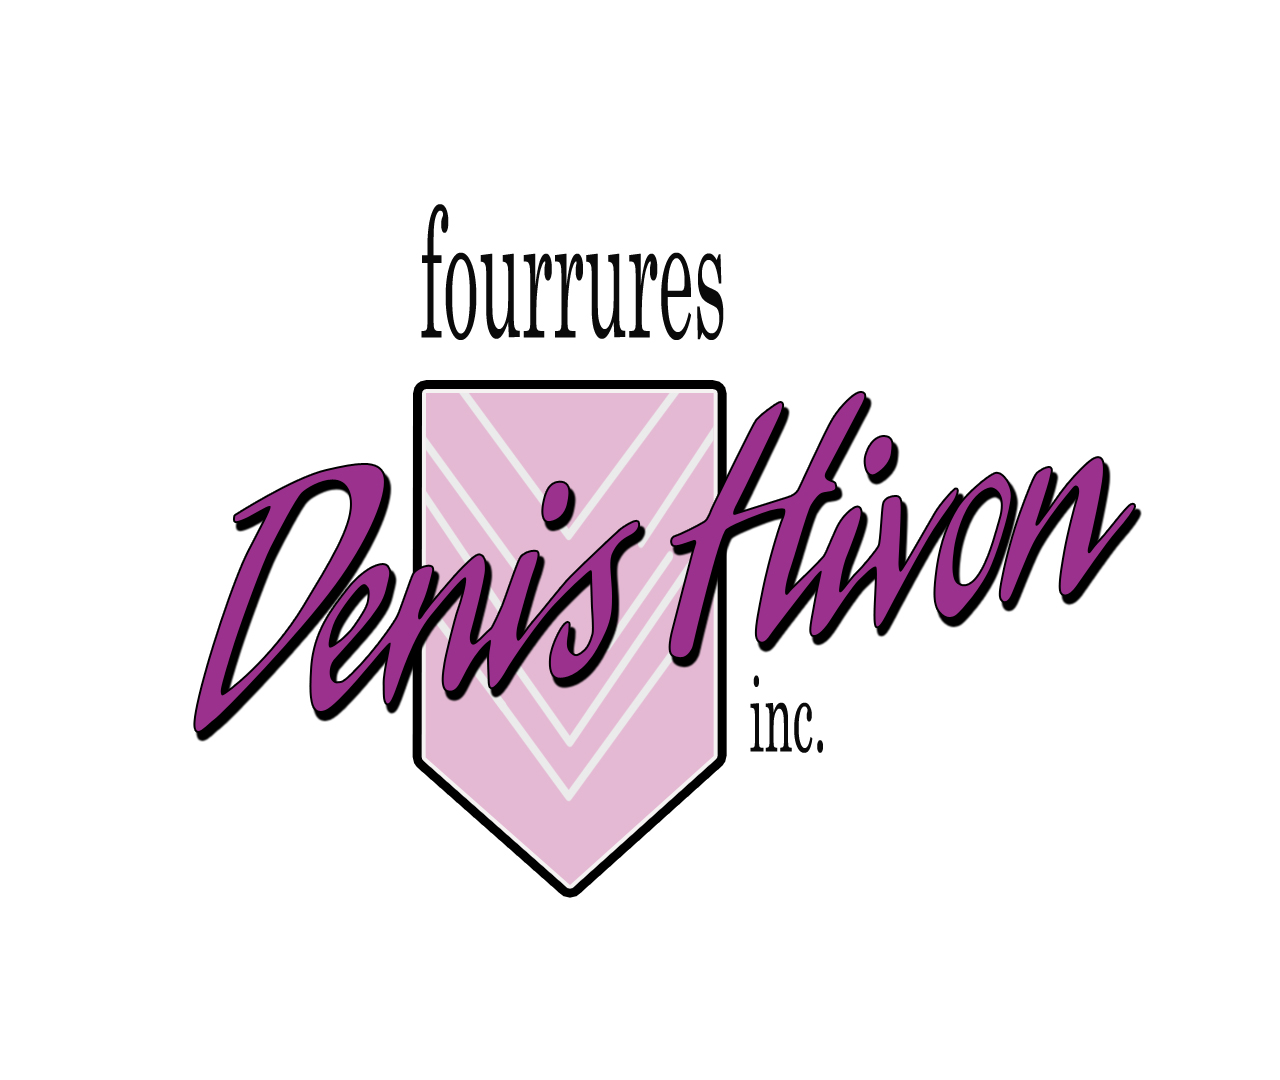 Logo Denis Hivon jpg hd